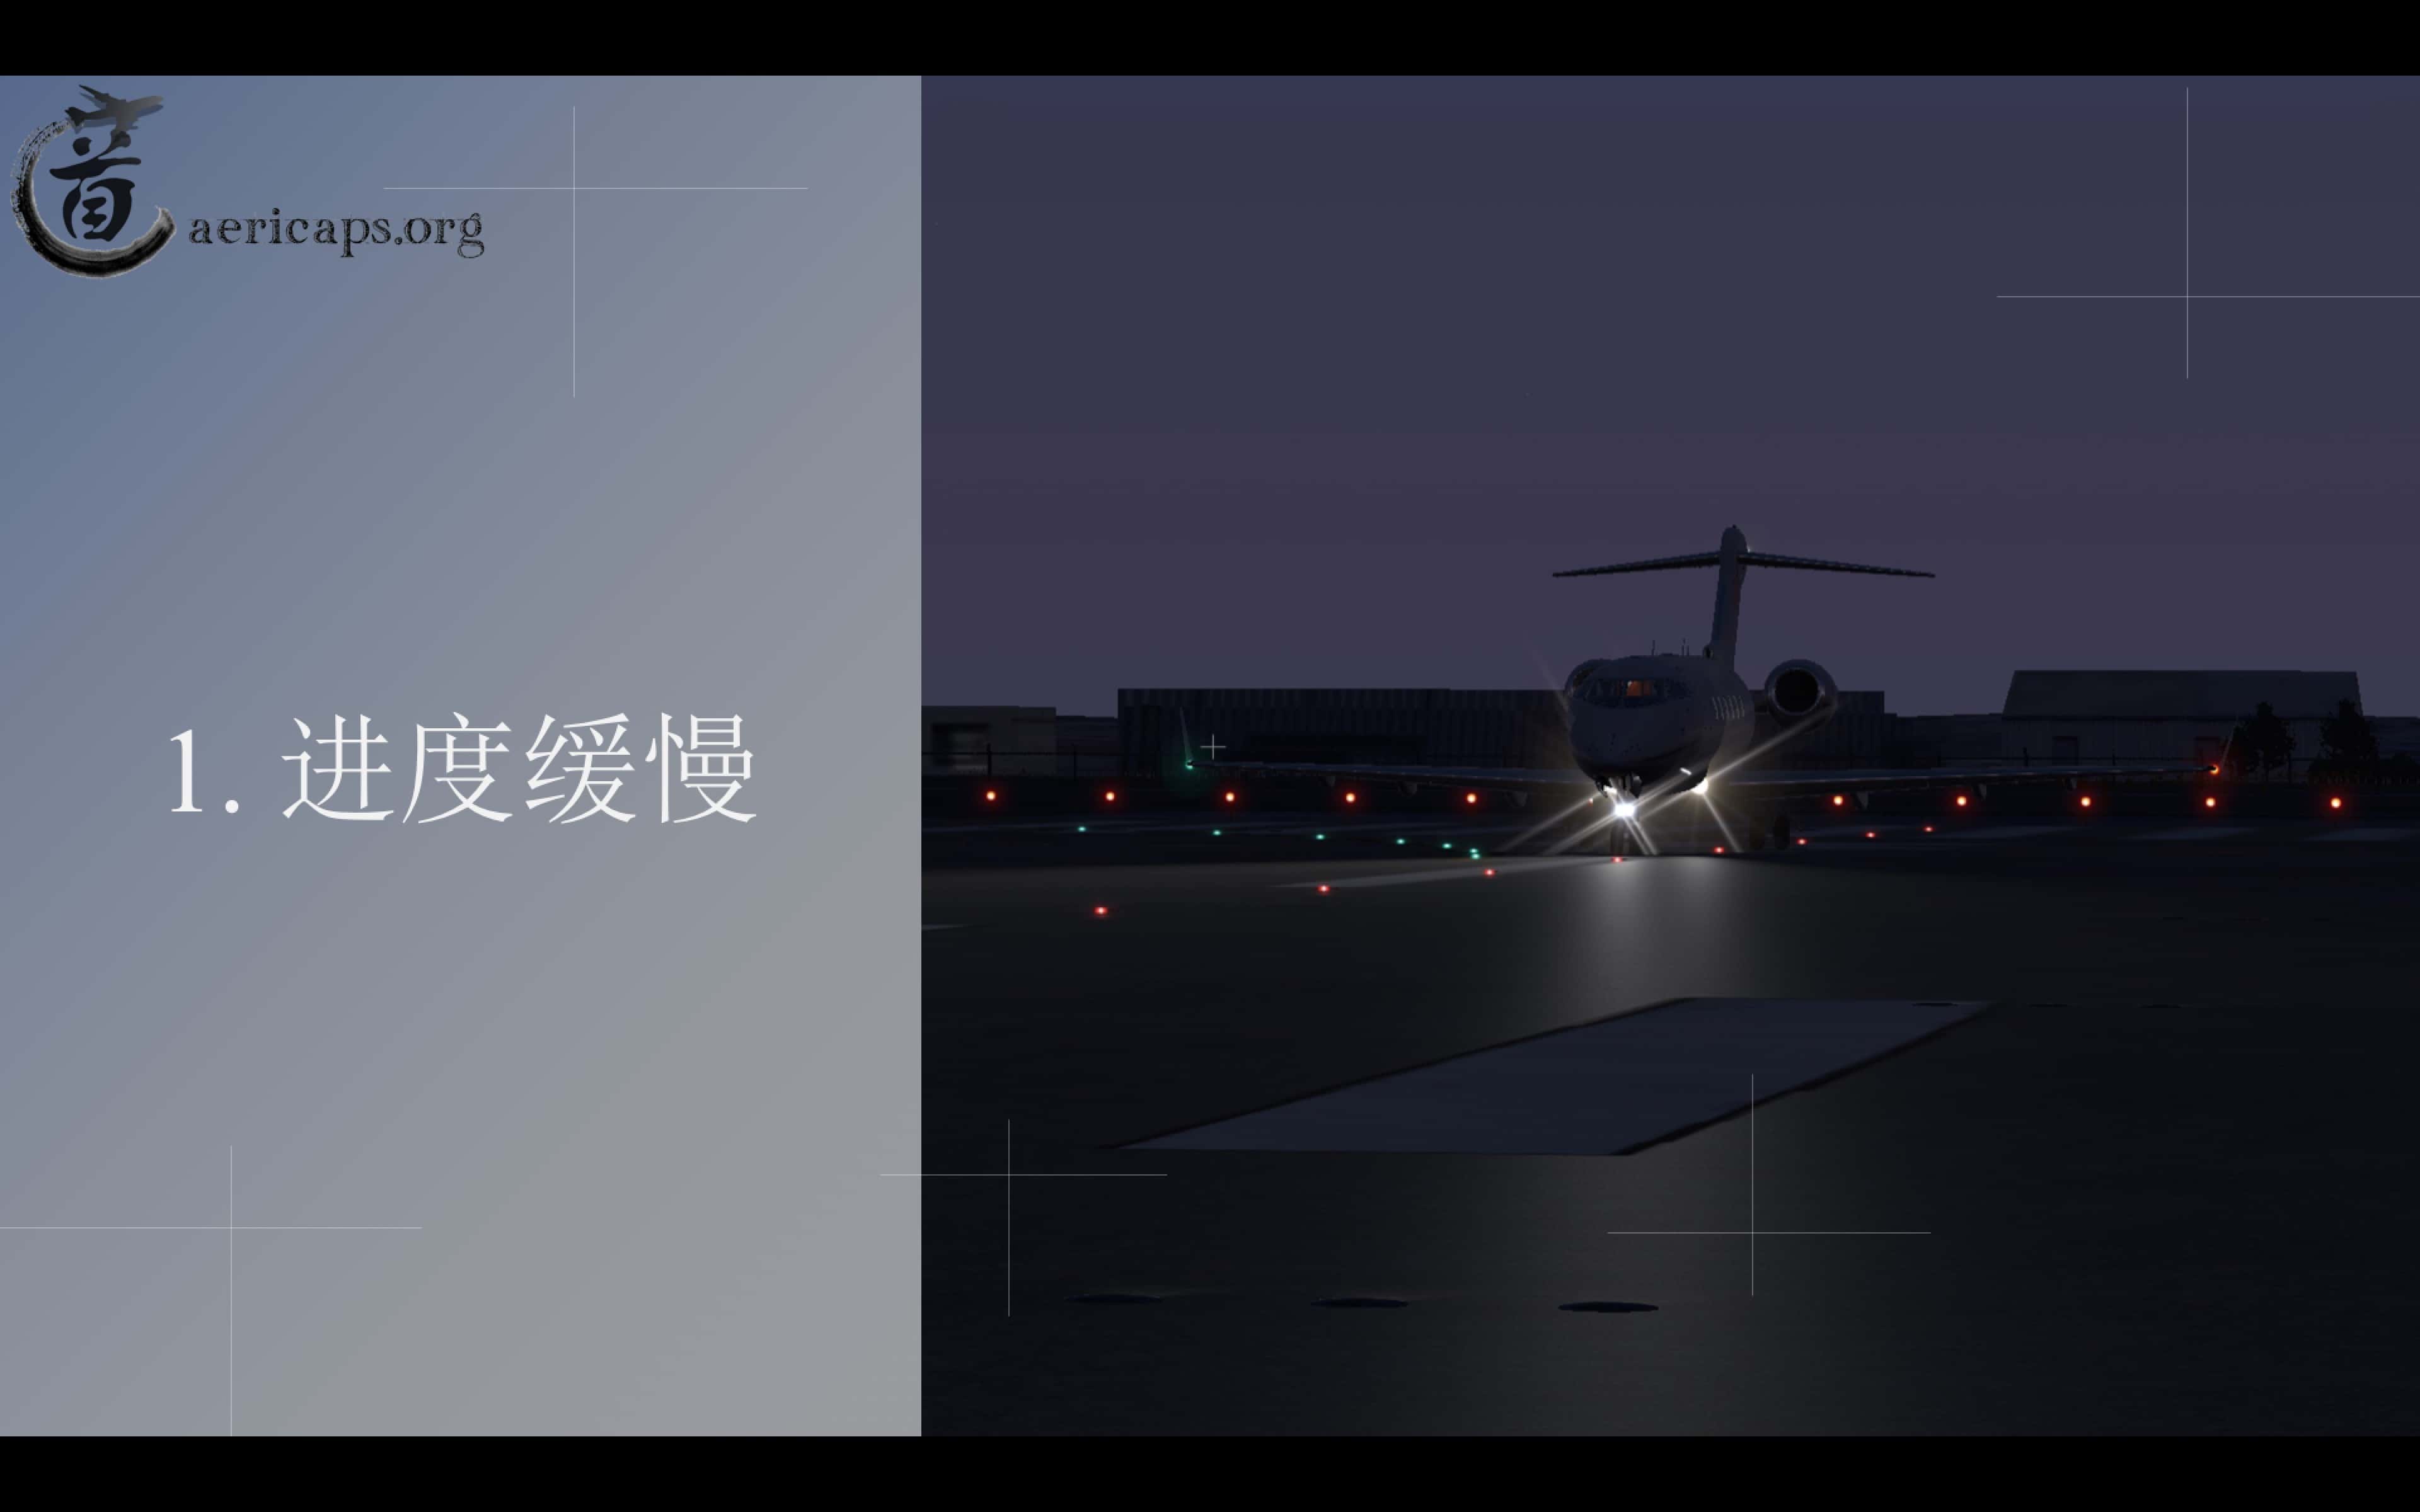 【预告】北京南苑机场地景宣传册-最终版-2525 